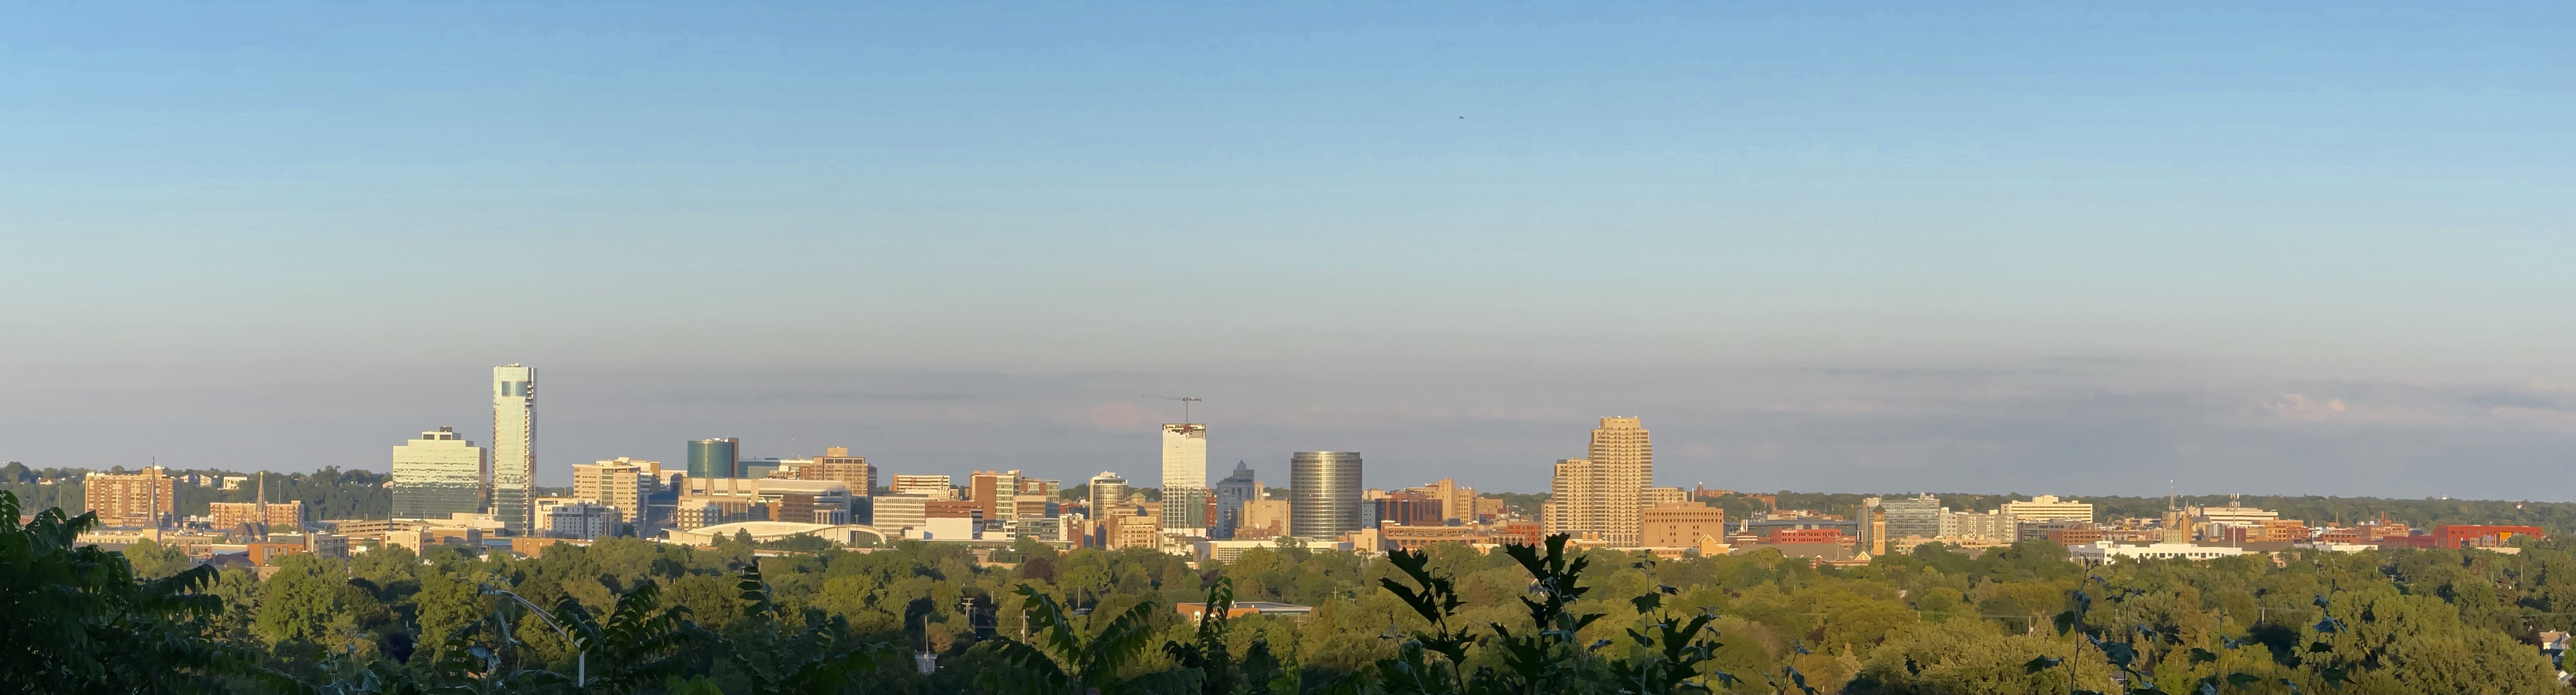 Grand Rapids, MI skyline 2021.jpg